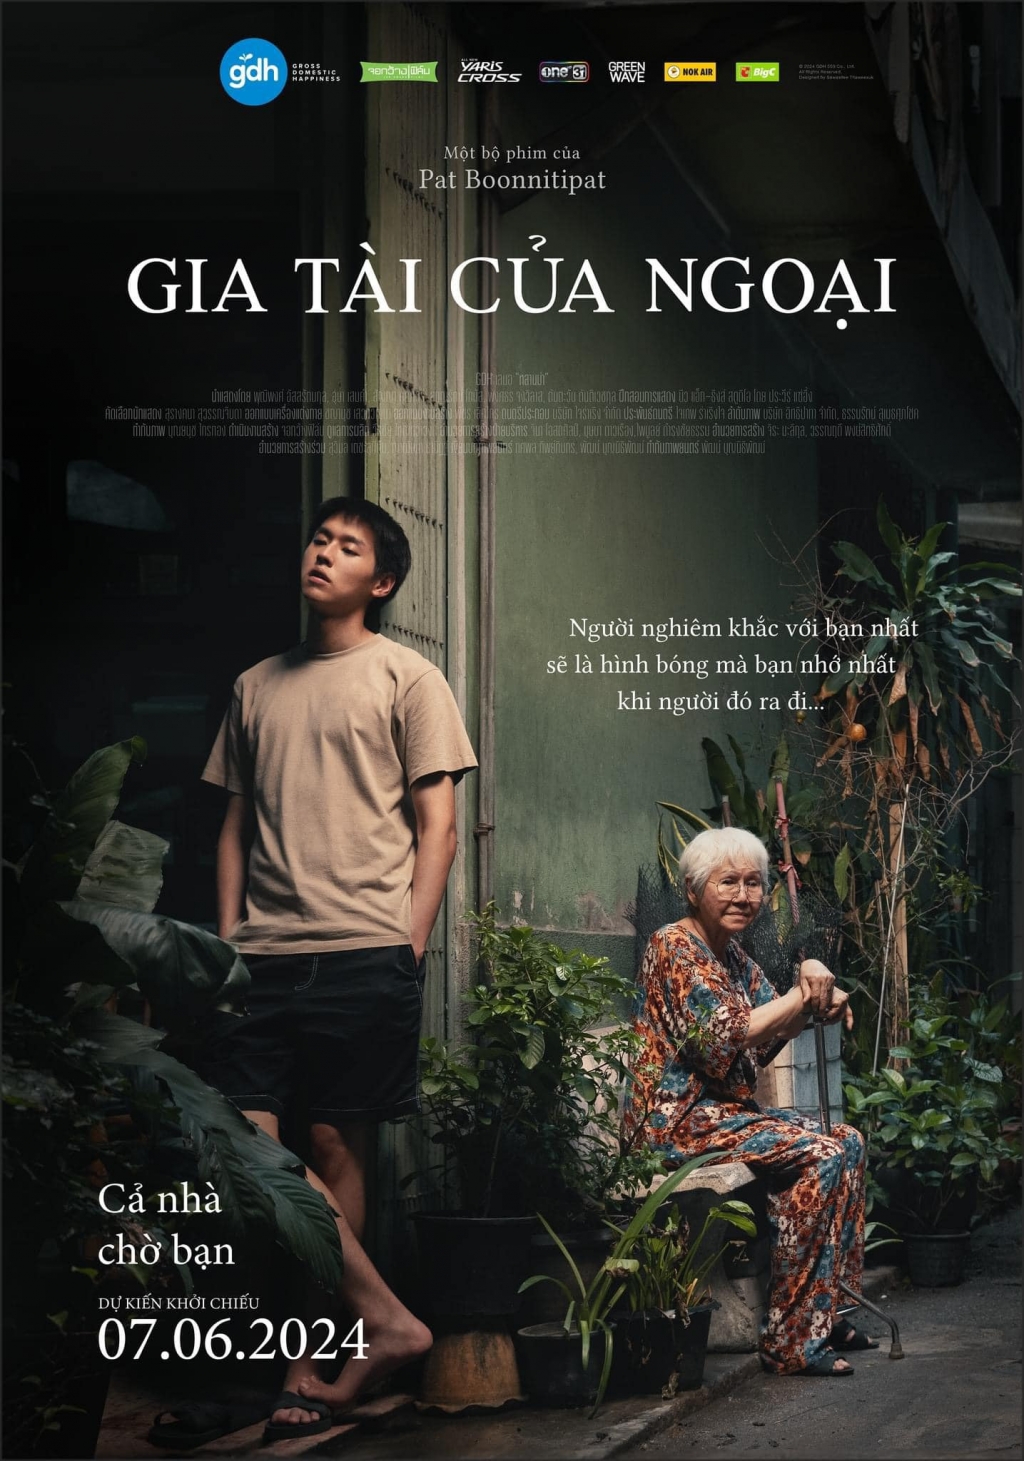 (Review) How to Make Millions Before Grandma Dies - (Gia tài của ngoại): Một bộ phim Thái khiến hàng nghìn khán giả phải rơi lệ vì quá chân thực.